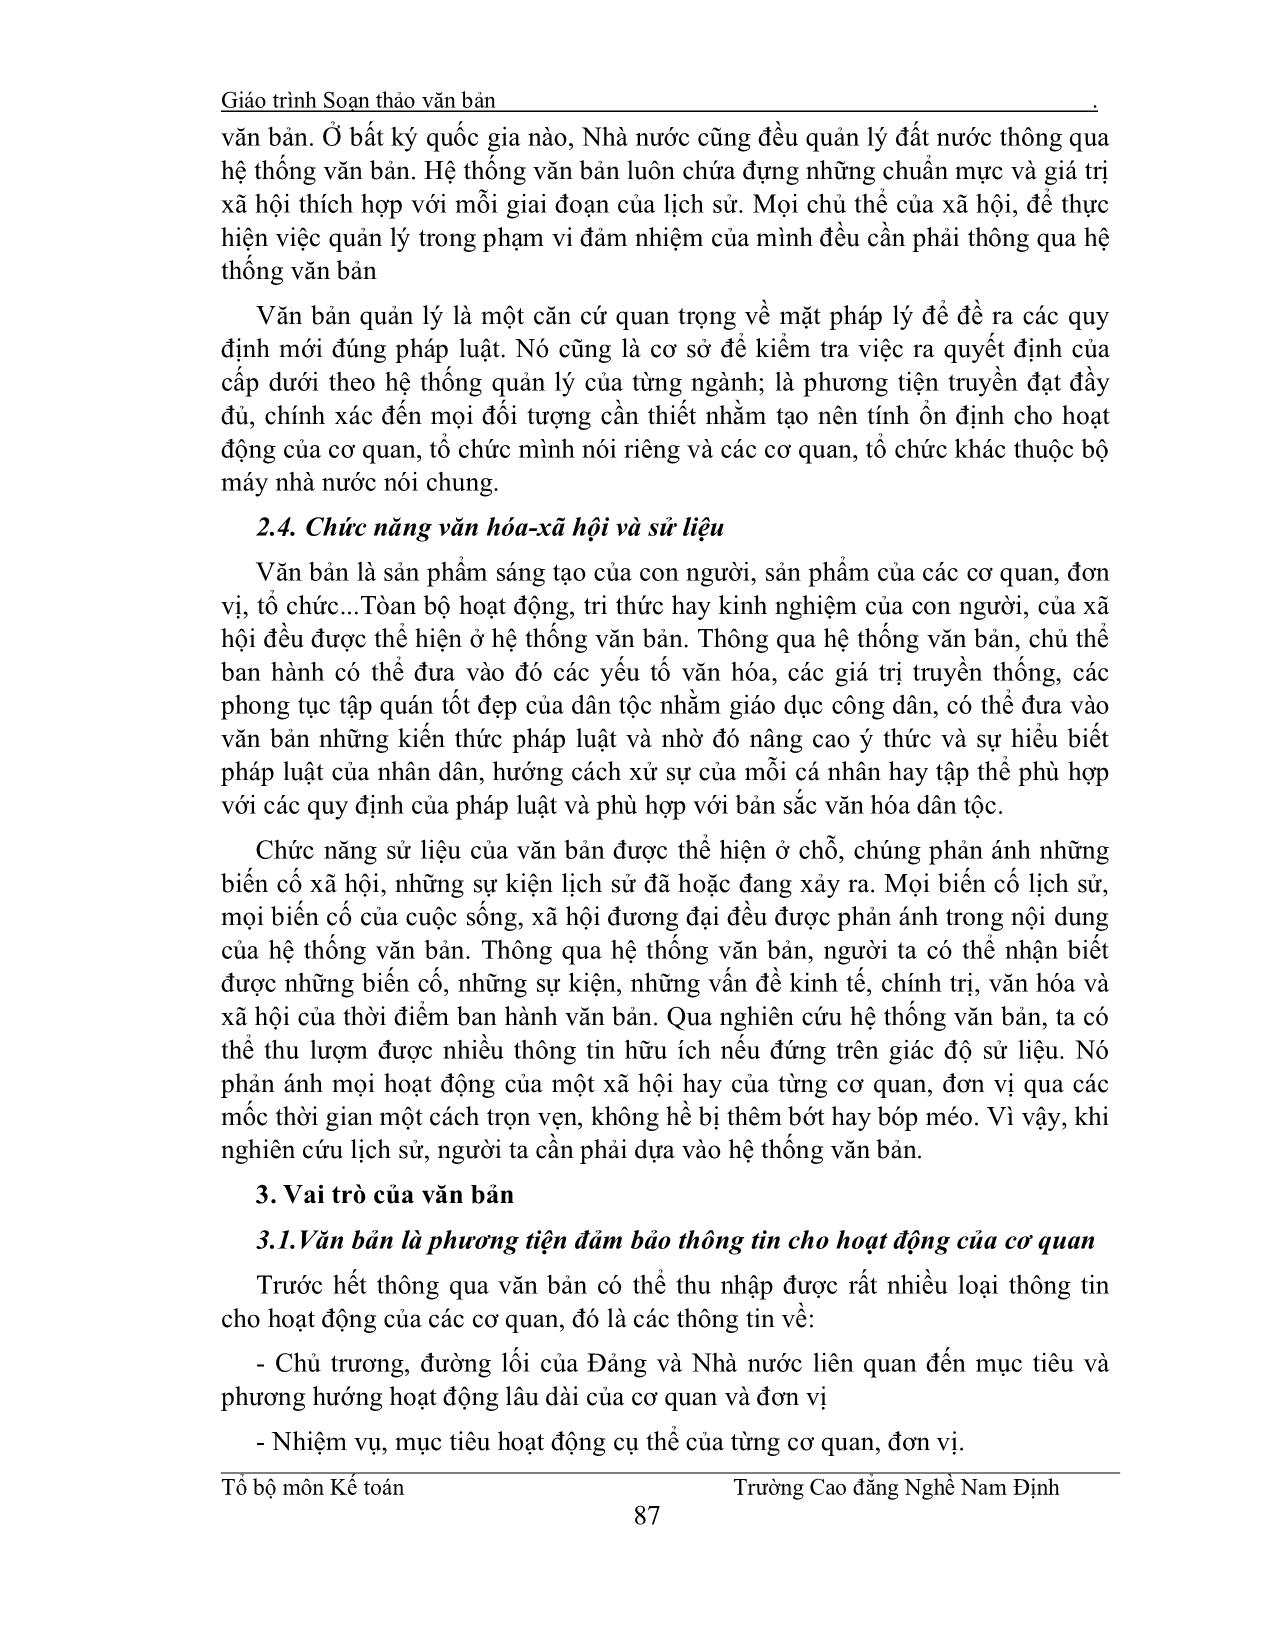 Giáo trình Soạn thảo văn bản (Phần 1) trang 3